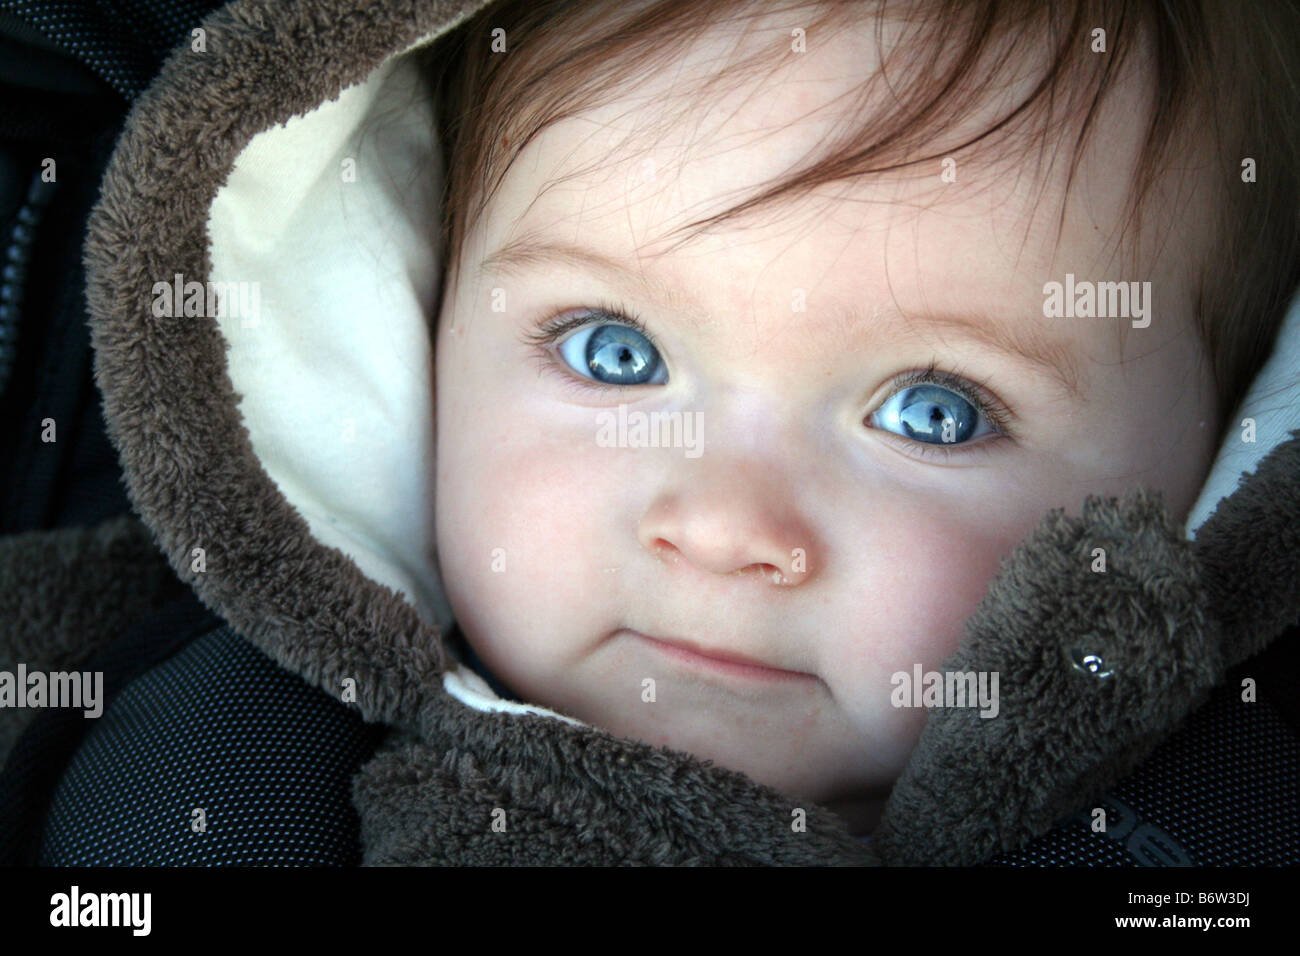 Jungen Baby Im Schnee Anzug Suchen Schon Und Niedlich Lacheln Mit Braunen Haaren Und Blauen Augen Stockfotografie Alamy